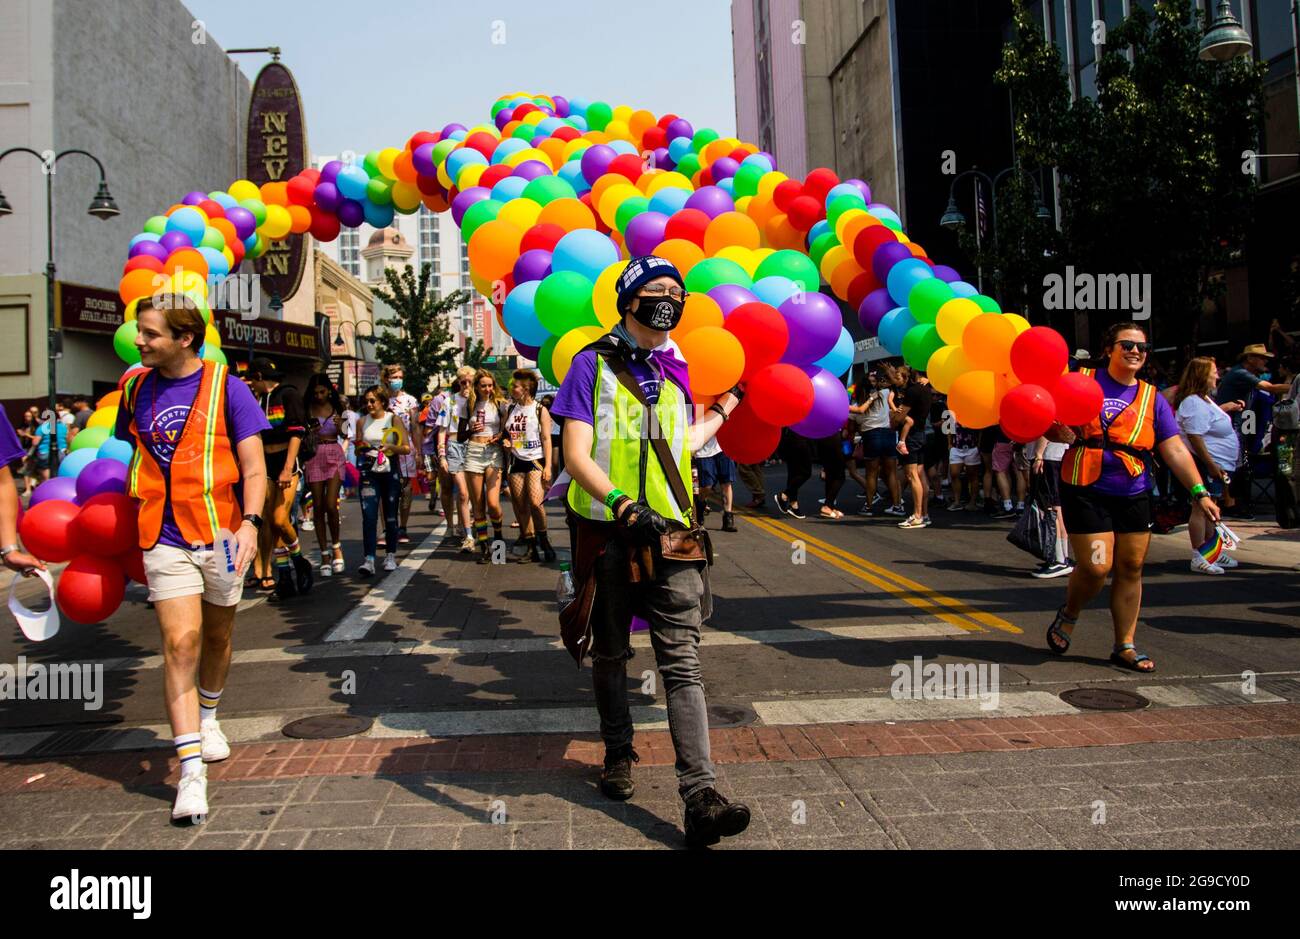 Reno, Usa. Juli 2021. Luftballons in den Farben des Regenbogens gingen  durch die Straße, während der Stolz Parade durch das Herz der Stadt,  gefeiert von Tausenden, die für die Veranstaltung kamen. Kredit: